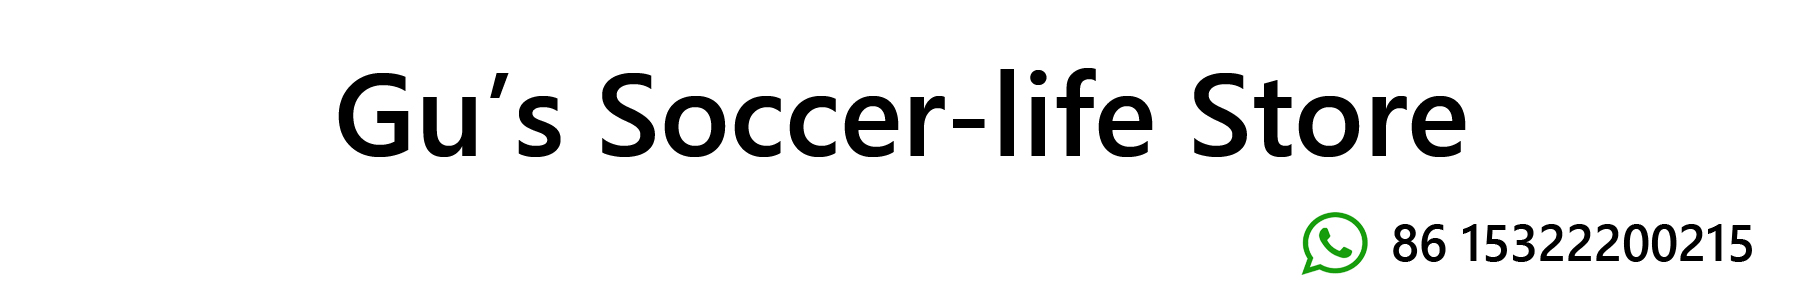 soccer333666